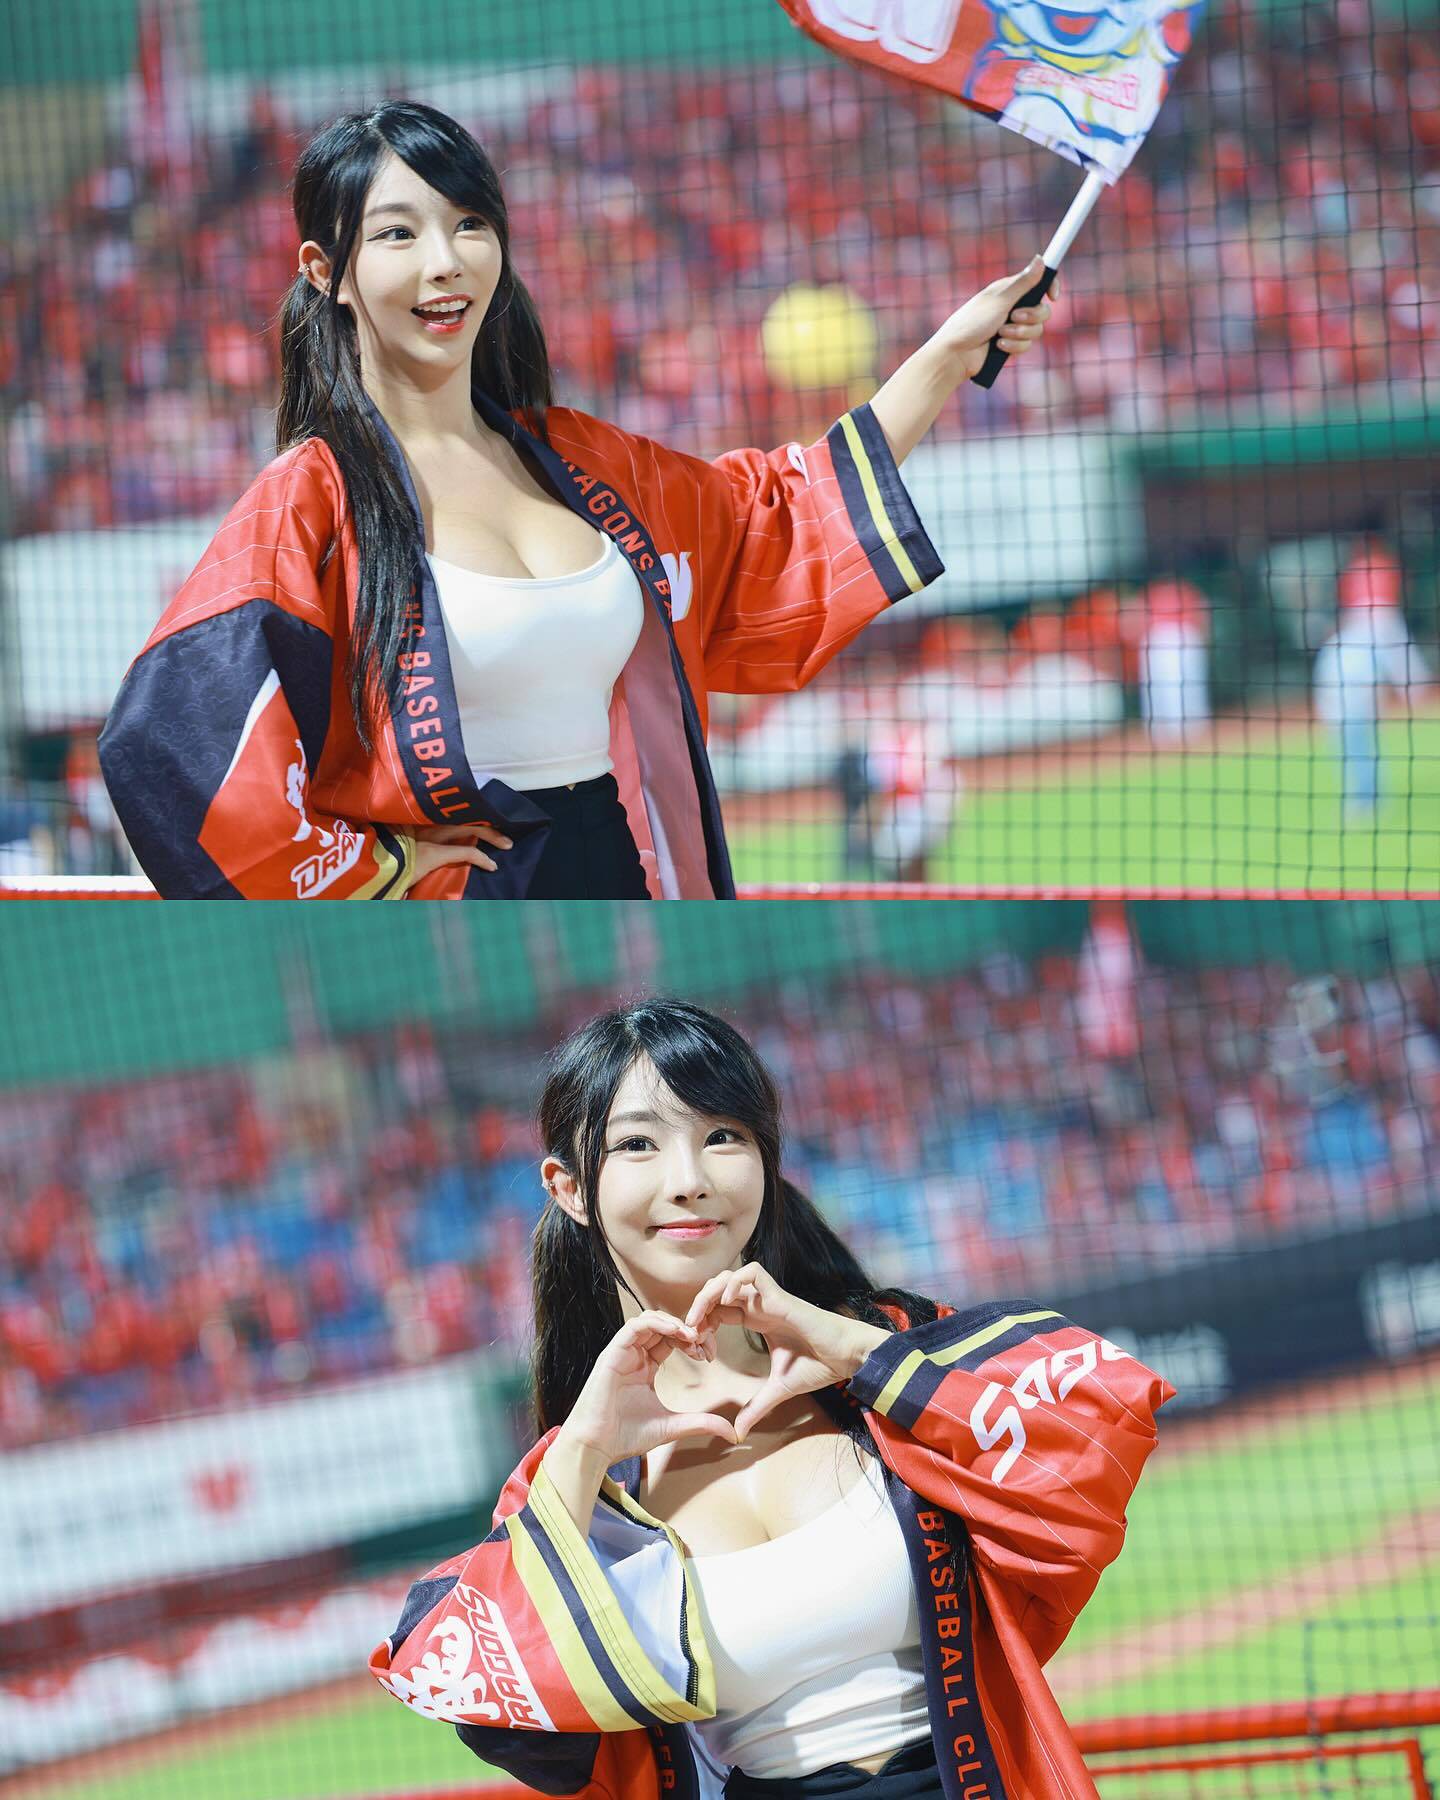 苏小小 苏小小在台北的天母棒球场进行「台湾啦啦队初体验」。